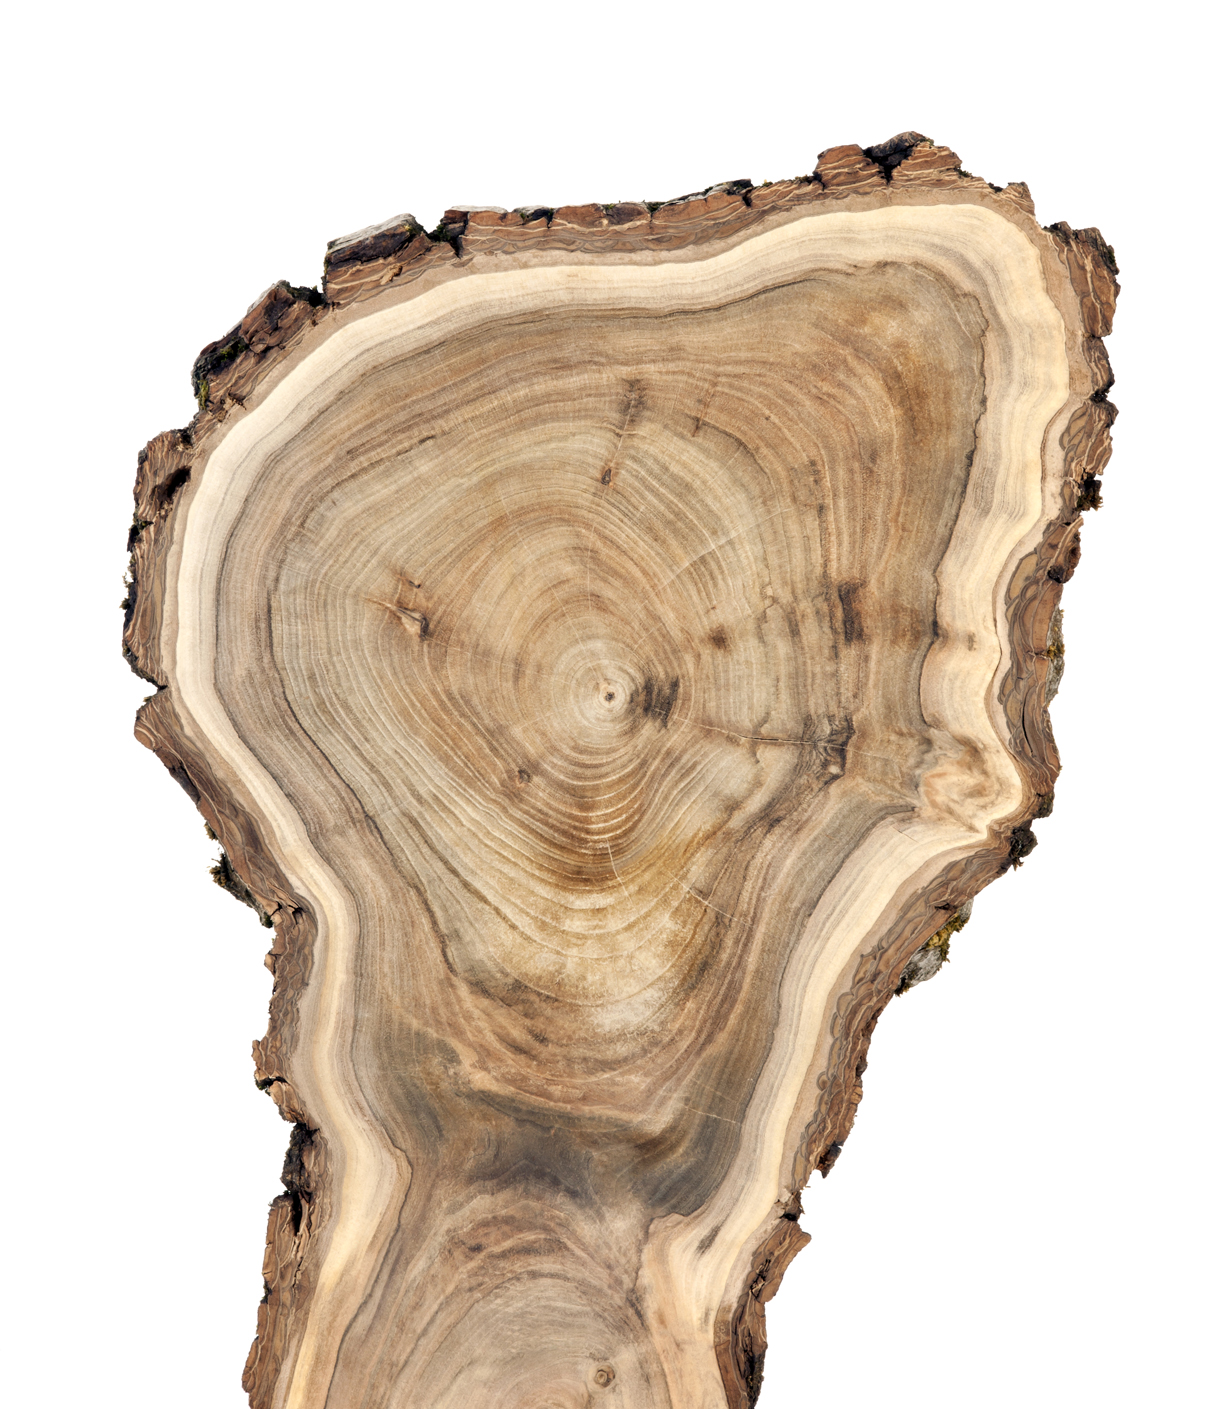 Cross section of walnut tree trunk.